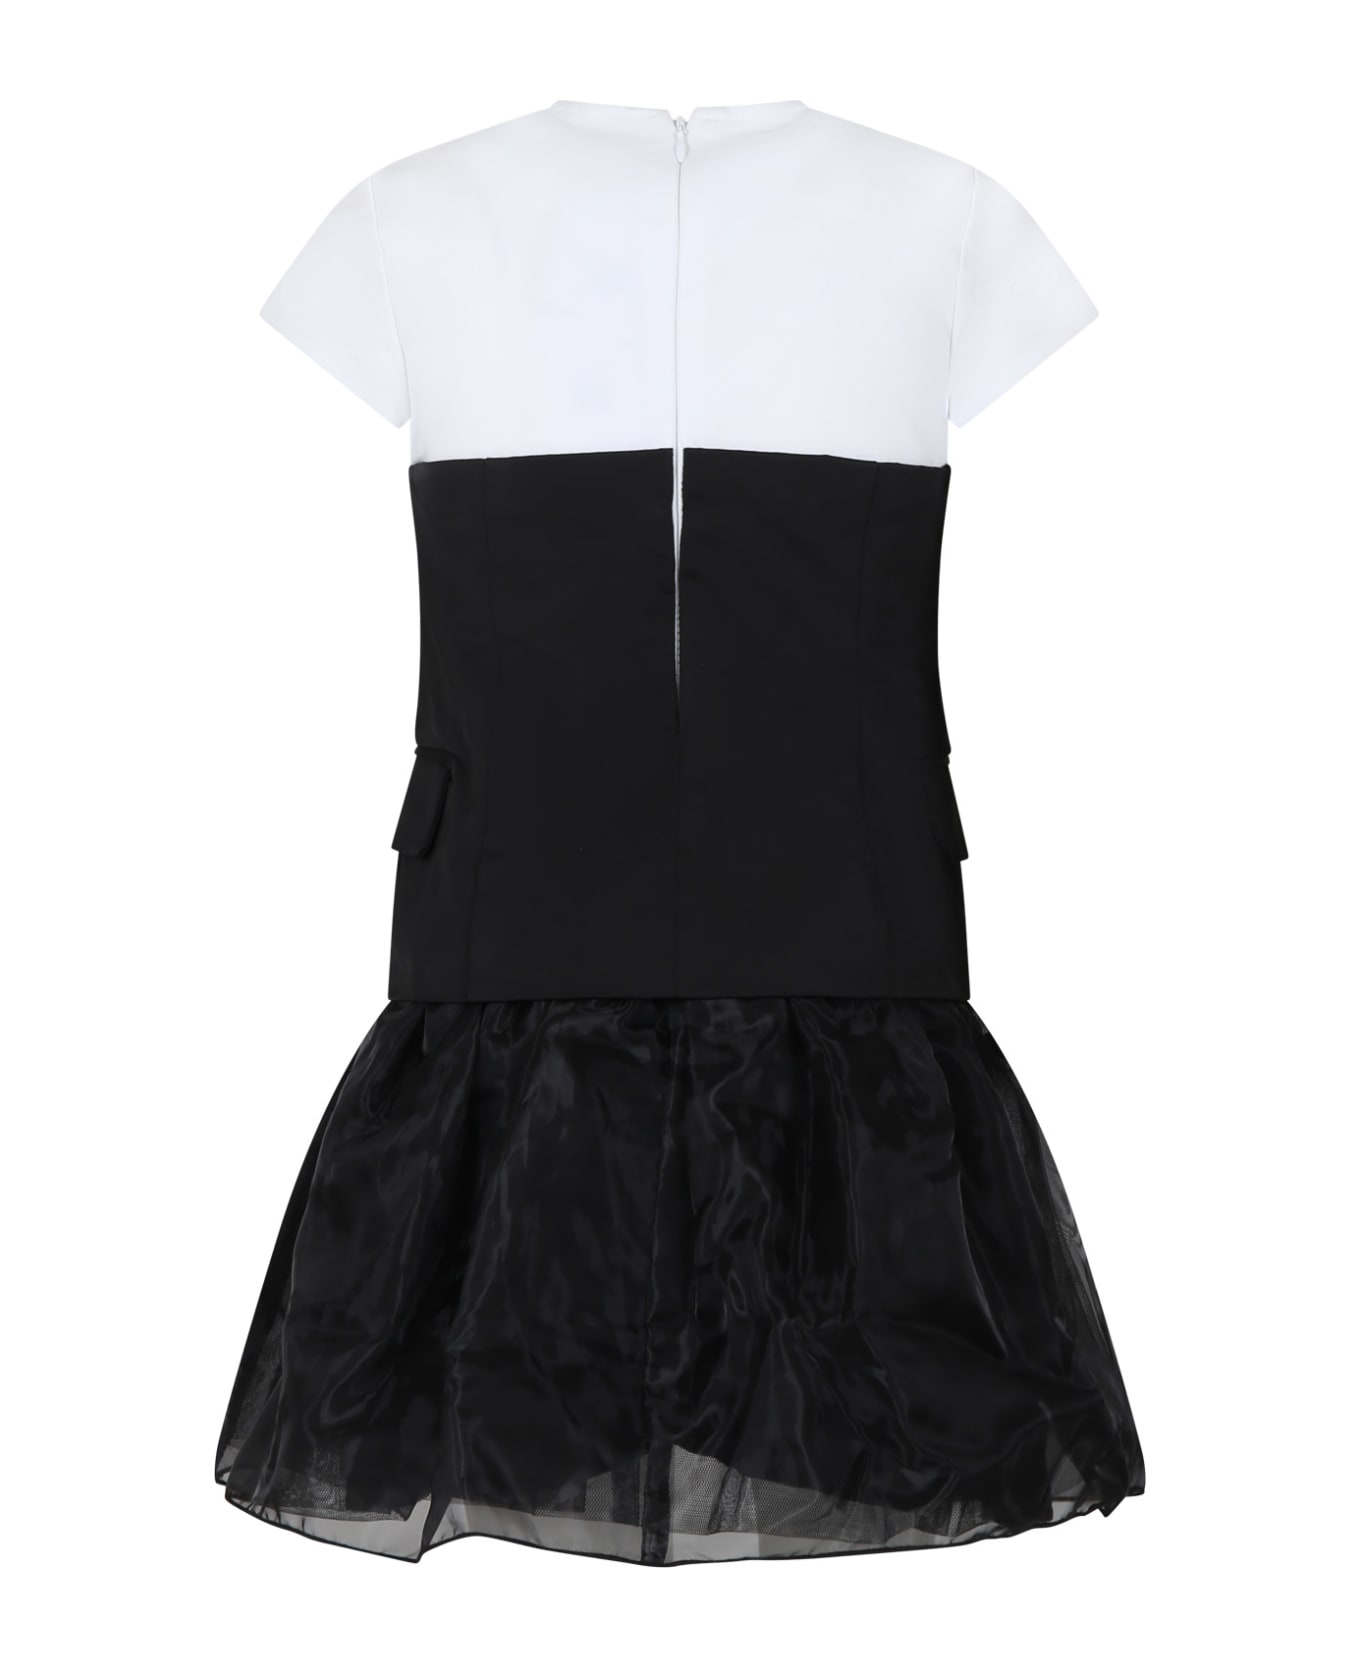 Karl Lagerfeld Kids Black Dress For Girl With Logo - Black